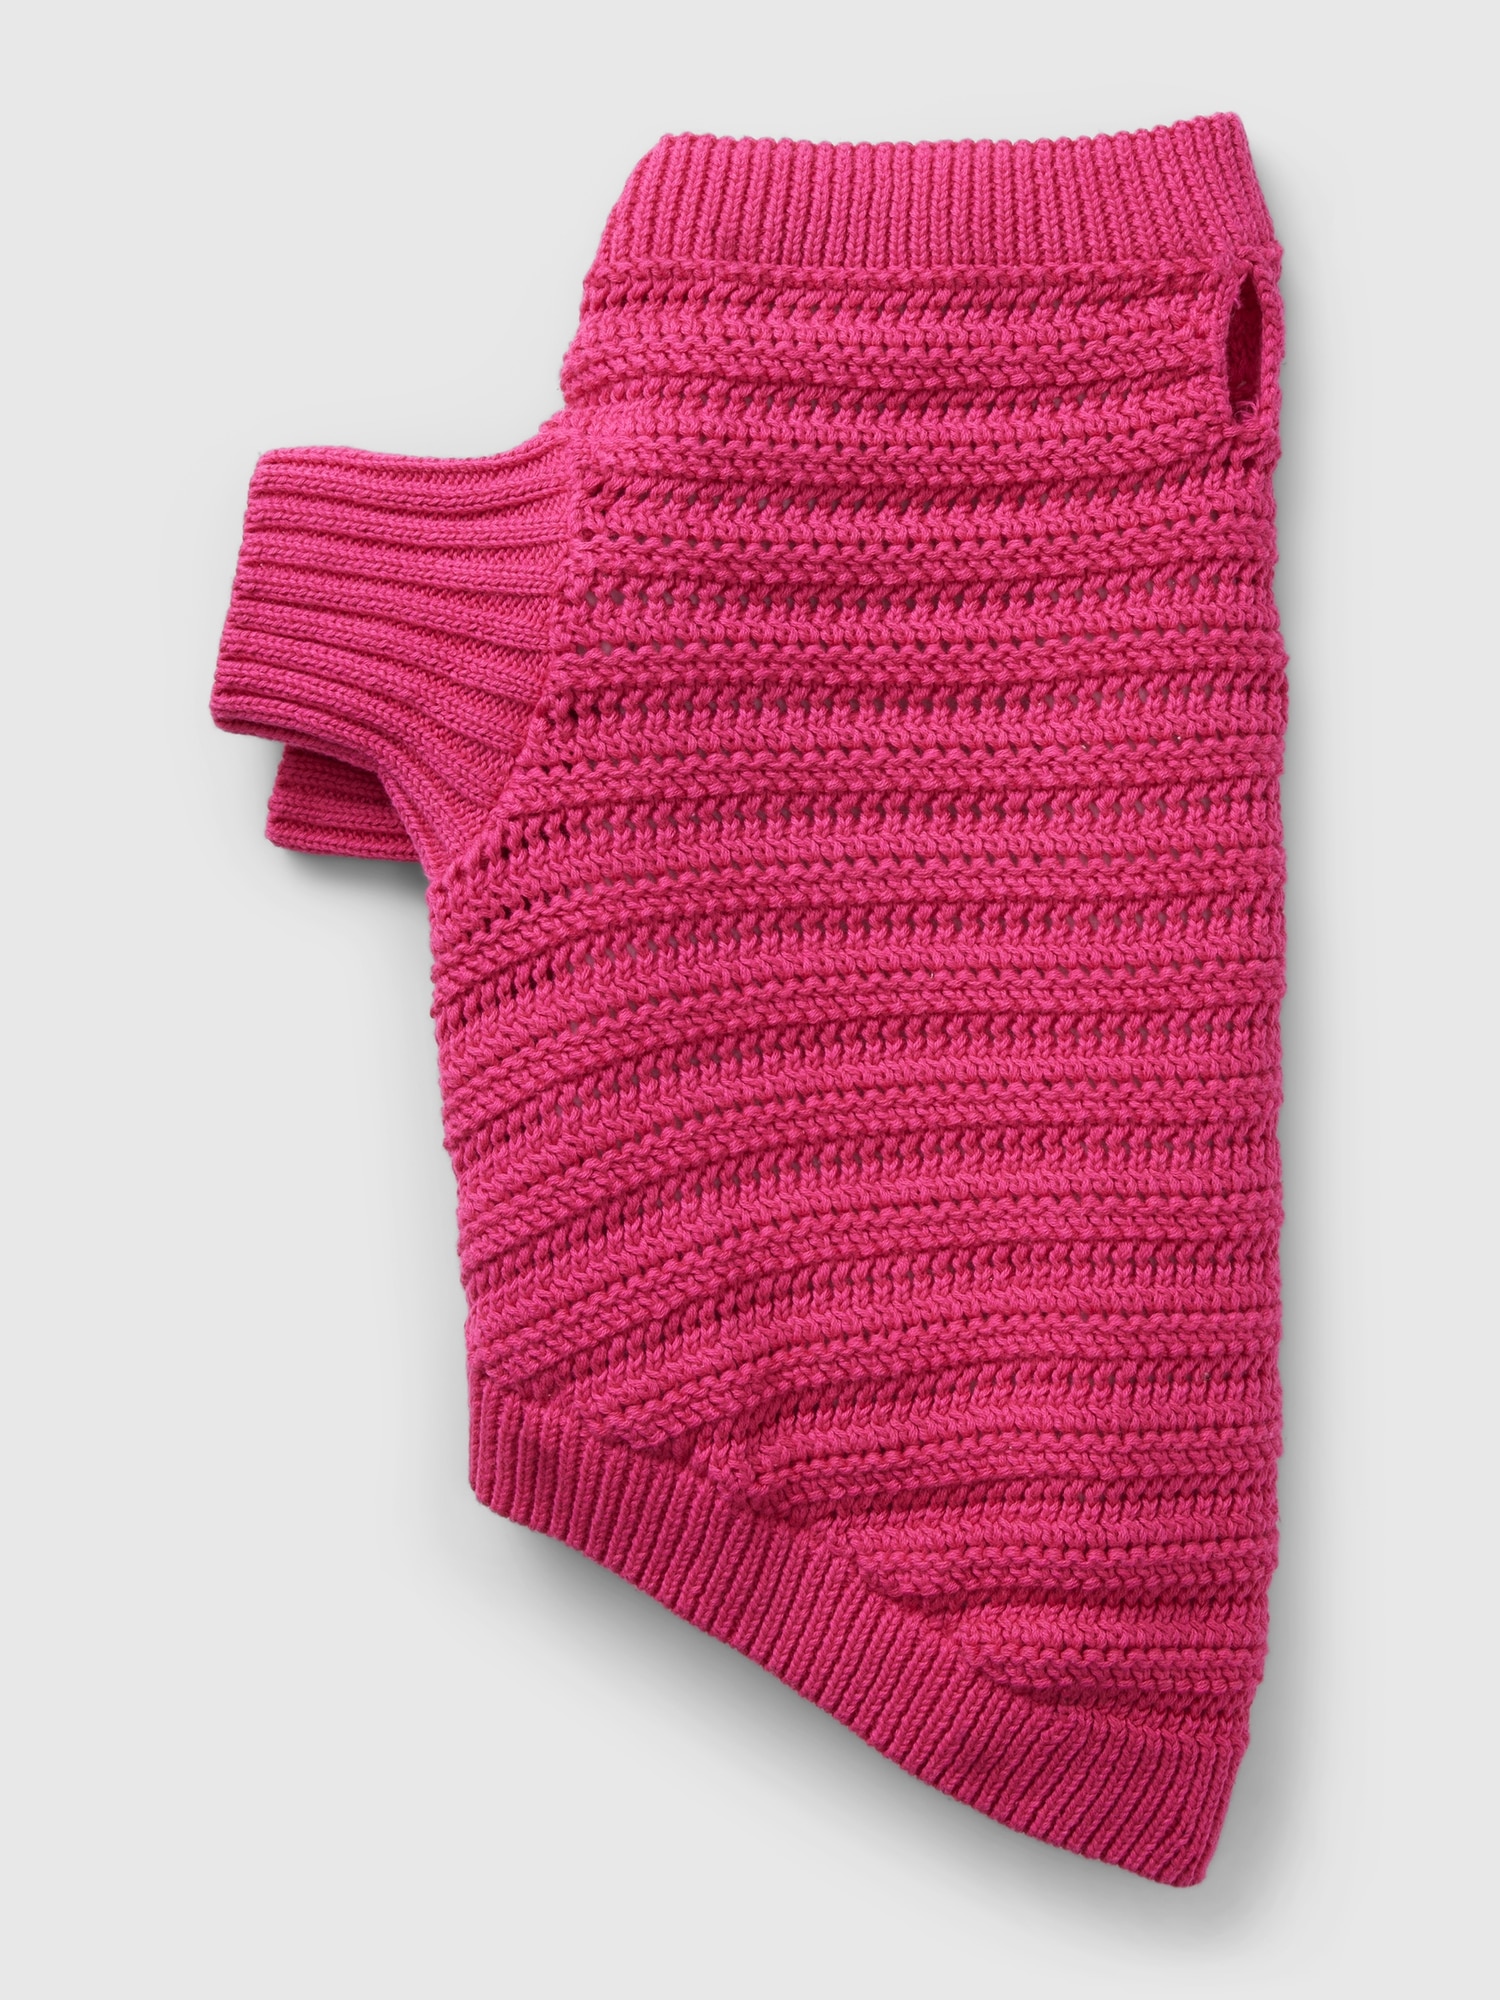 Crochet Pet Sweater